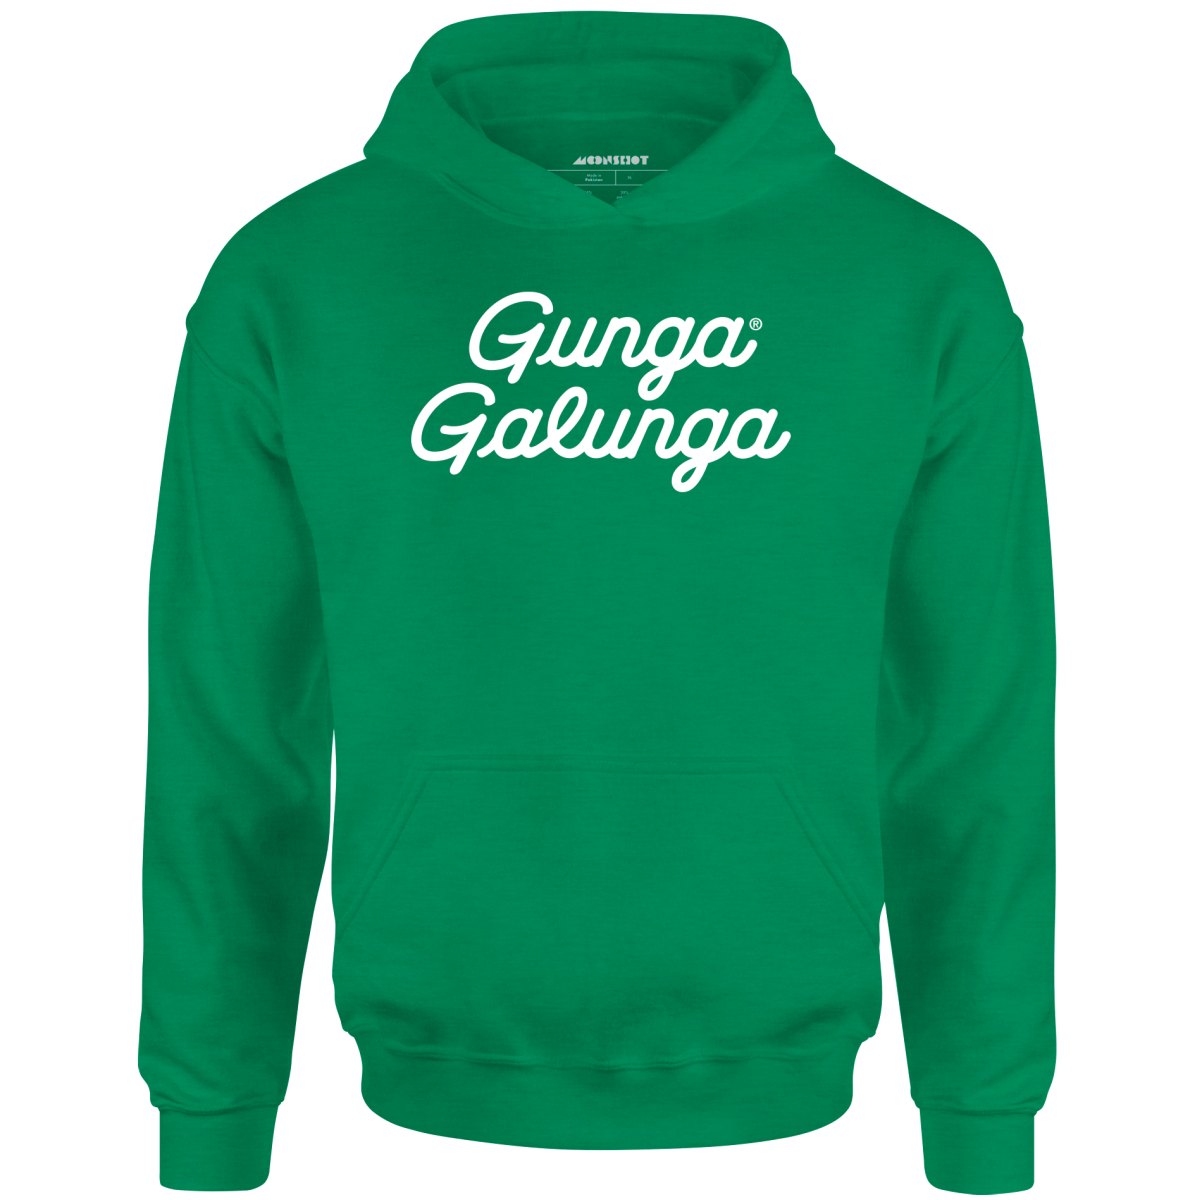 Gunga Galunga v2 - Unisex Hoodie